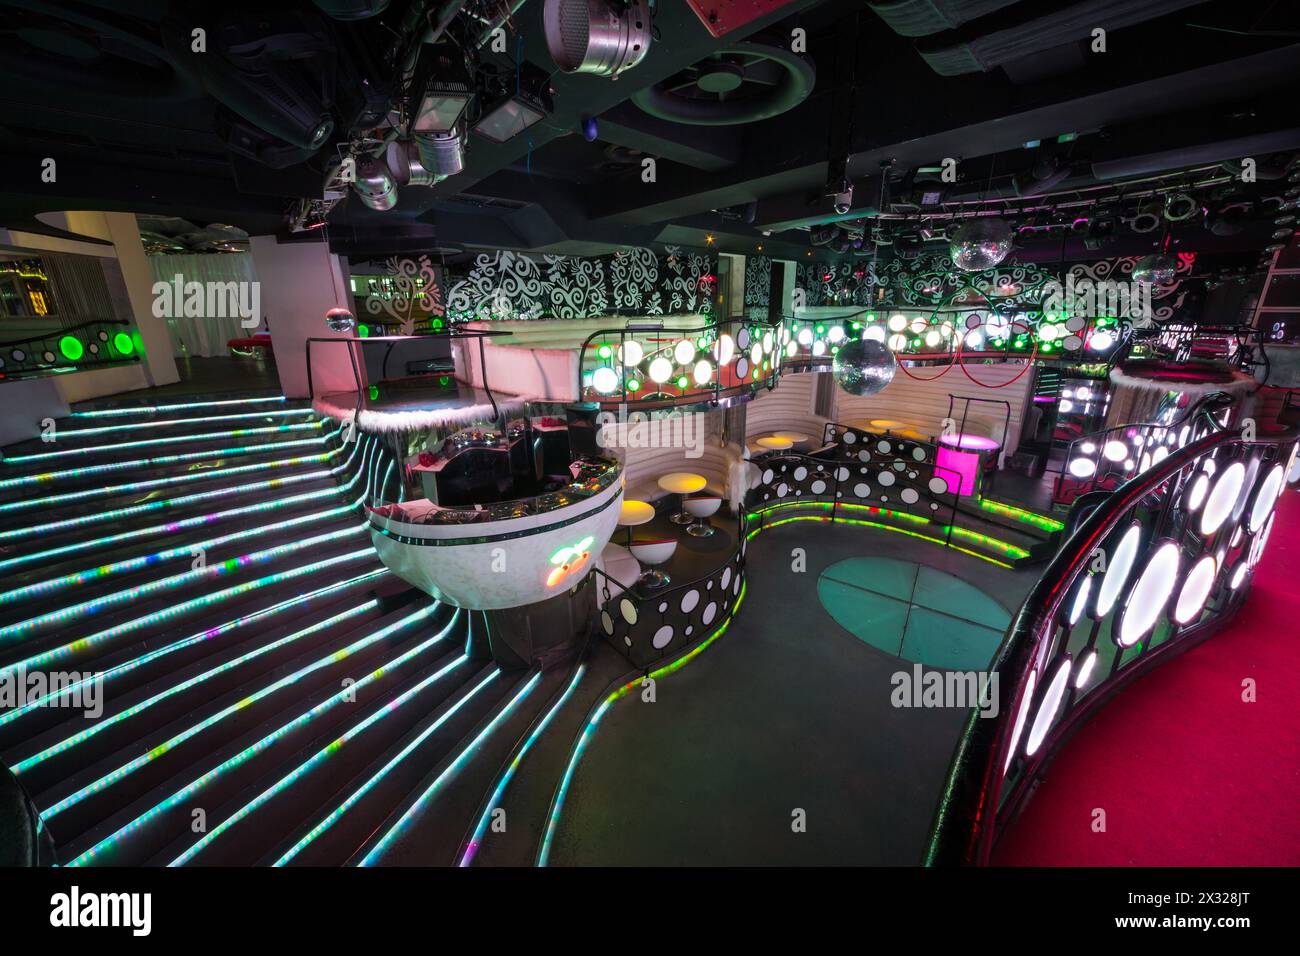 MOSKAU - 18. JAN: Das Innere eines der Räume des Nachtclubs Pacha mit glühender Treppe am 18. Januar 2013 in Moskau, Russland. Stockfoto